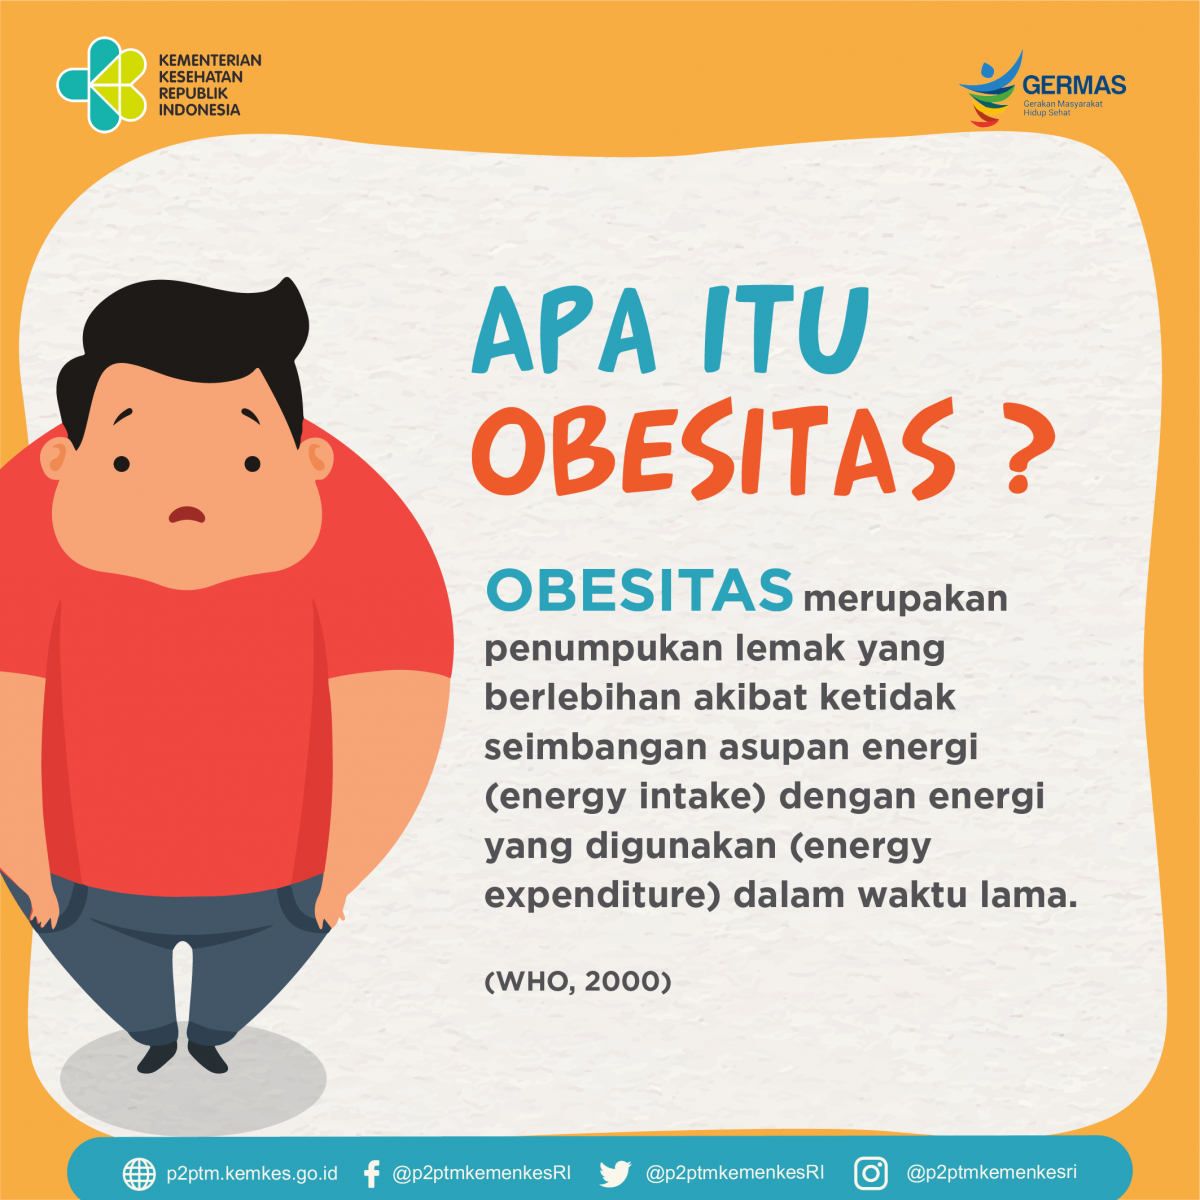 Apa itu Obesitas?